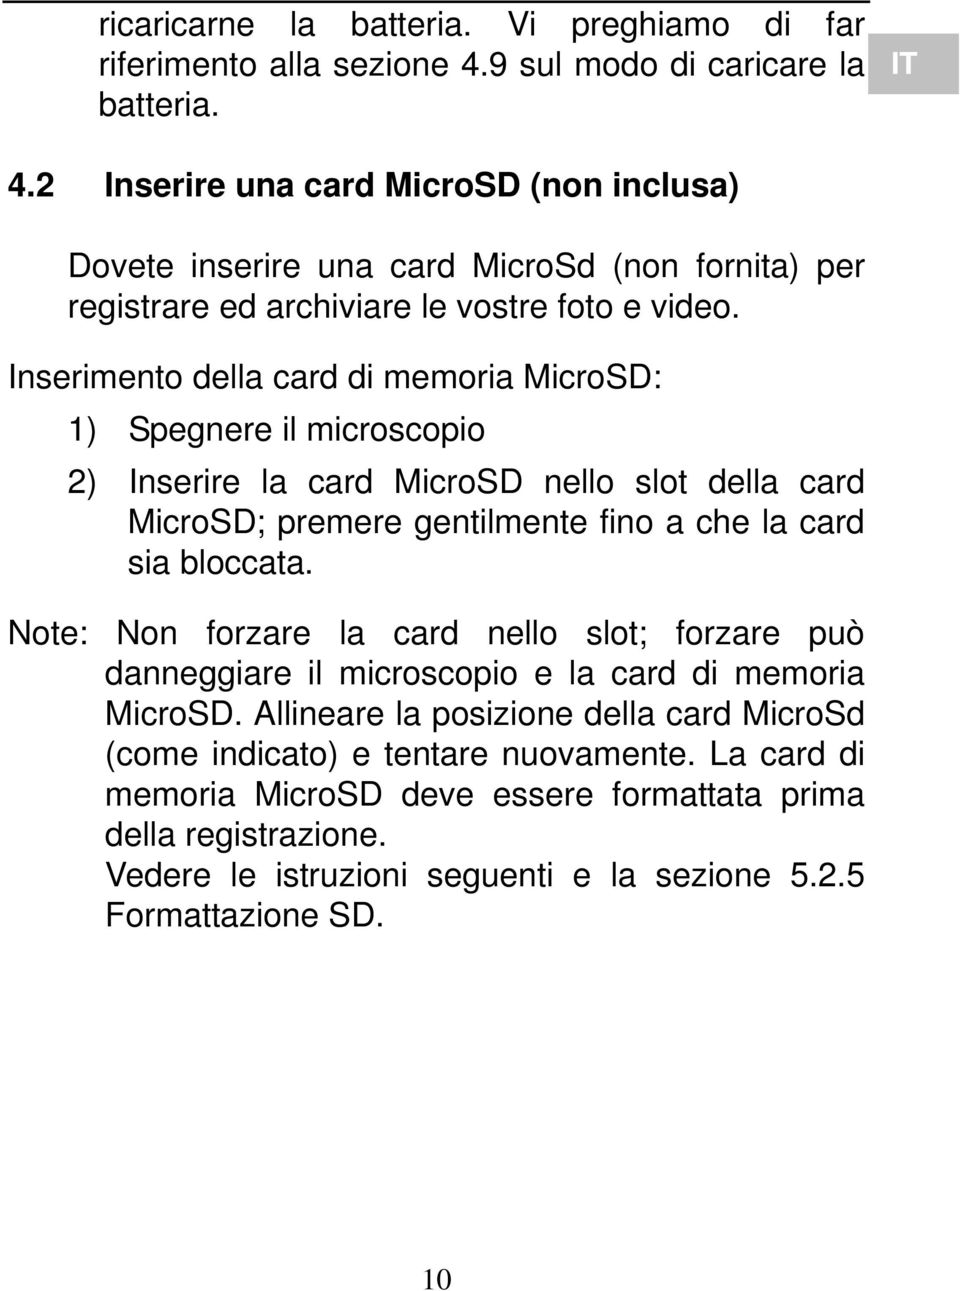 Inserimento della card di memoria MicroSD: 1) Spegnere il microscopio 2) Inserire la card MicroSD nello slot della card MicroSD; premere gentilmente fino a che la card sia bloccata.